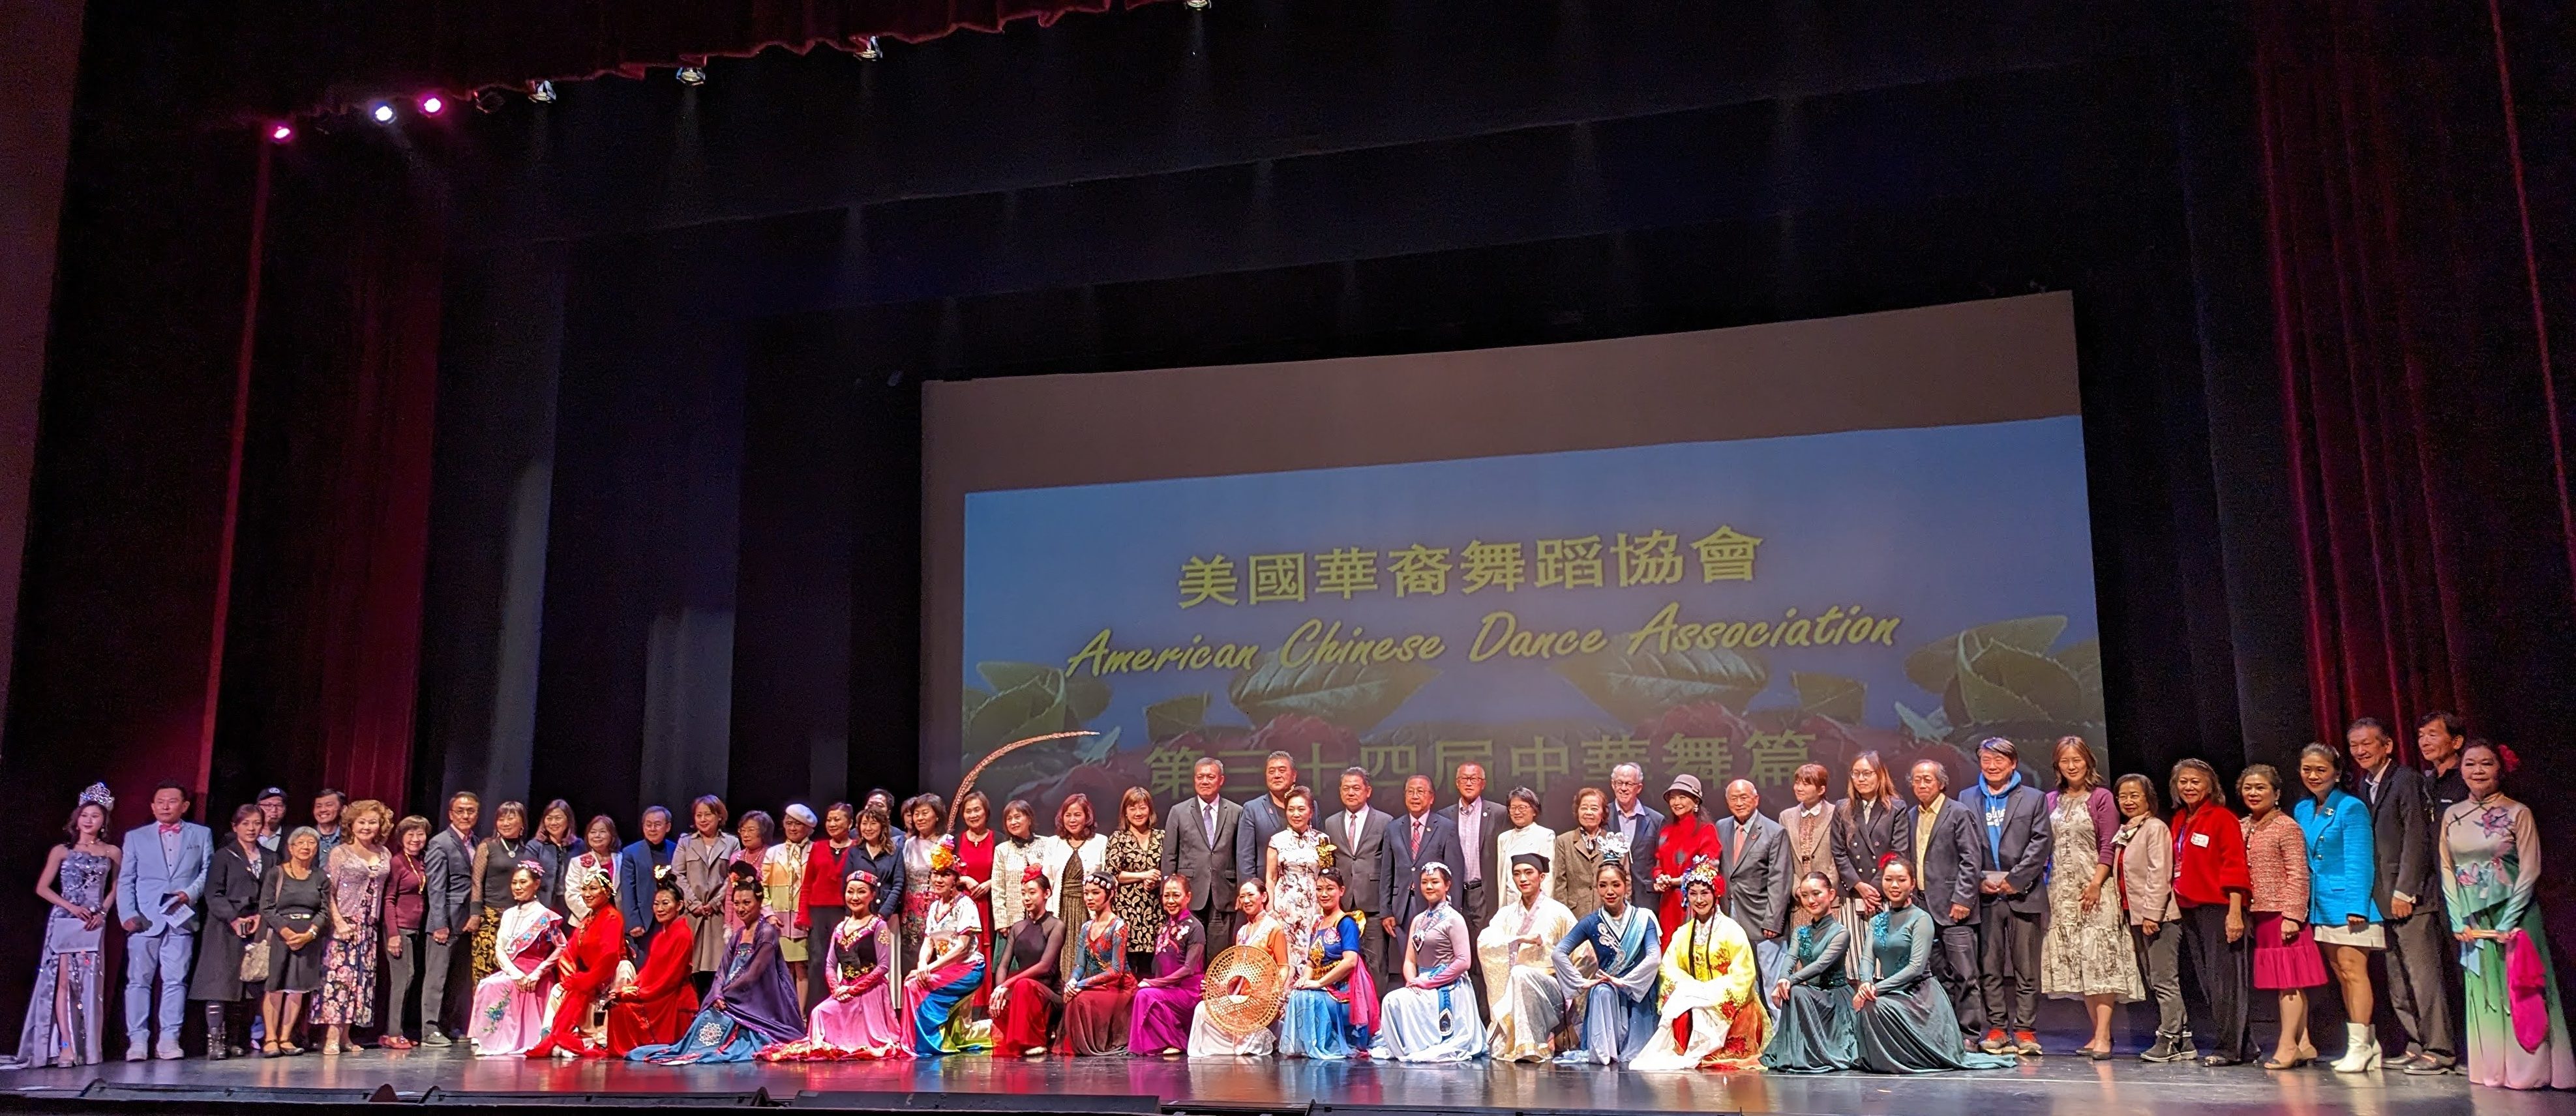 中华舞篇展现民族舞特色 藏人弯腰维族仰头